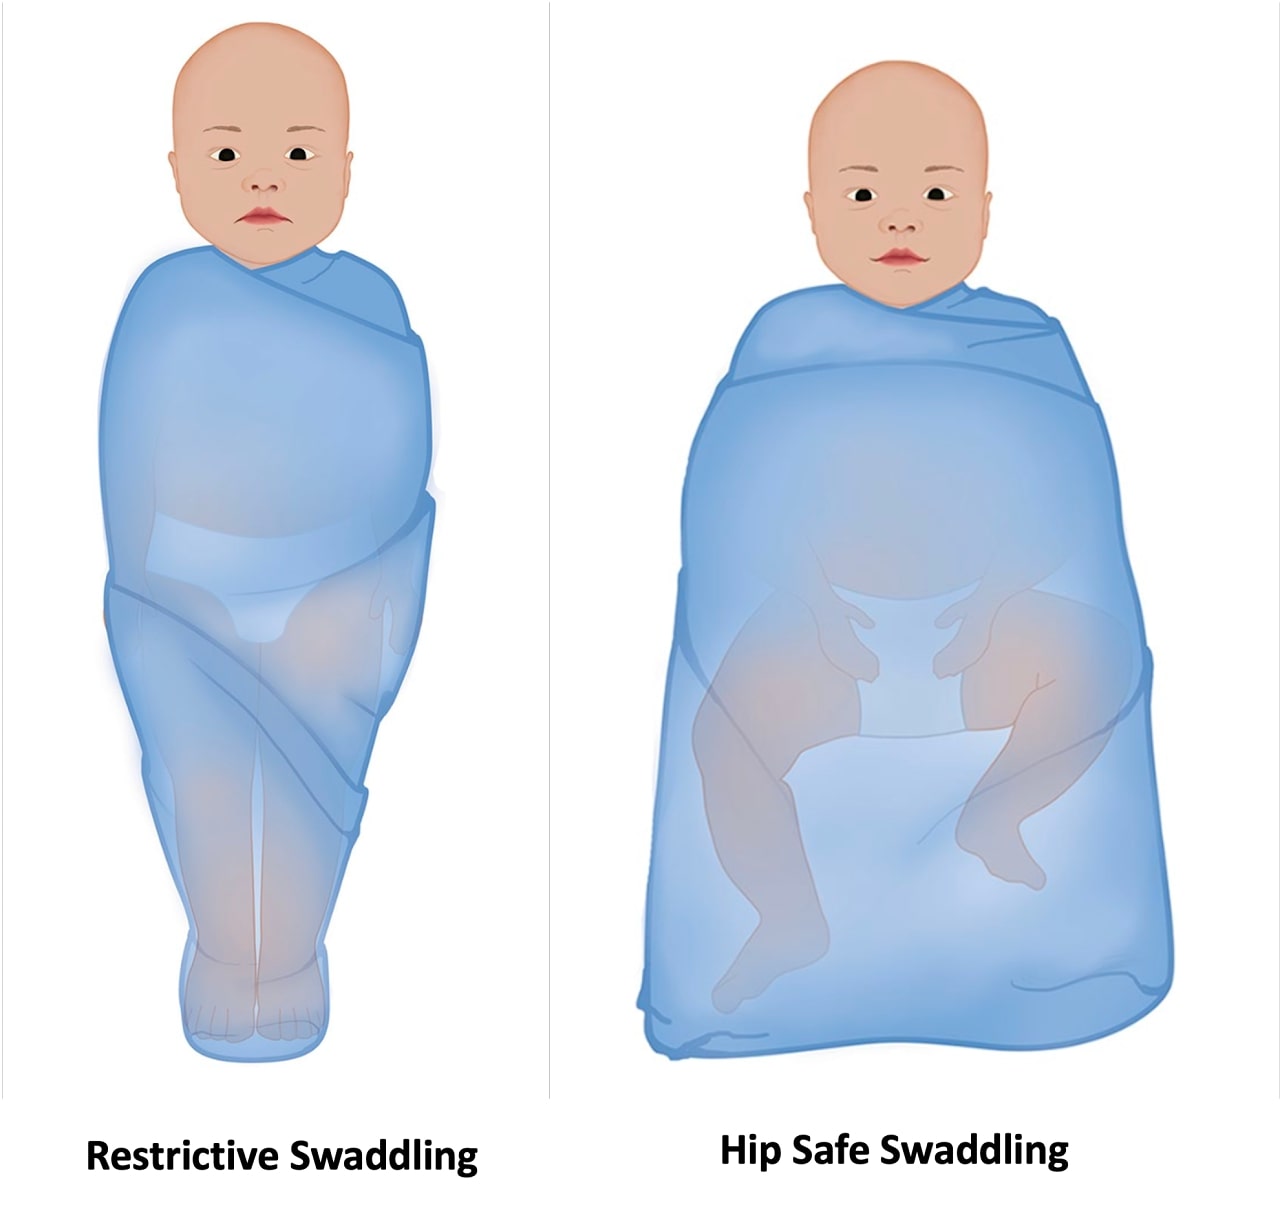 Restrictive and Hip-safe swaddling